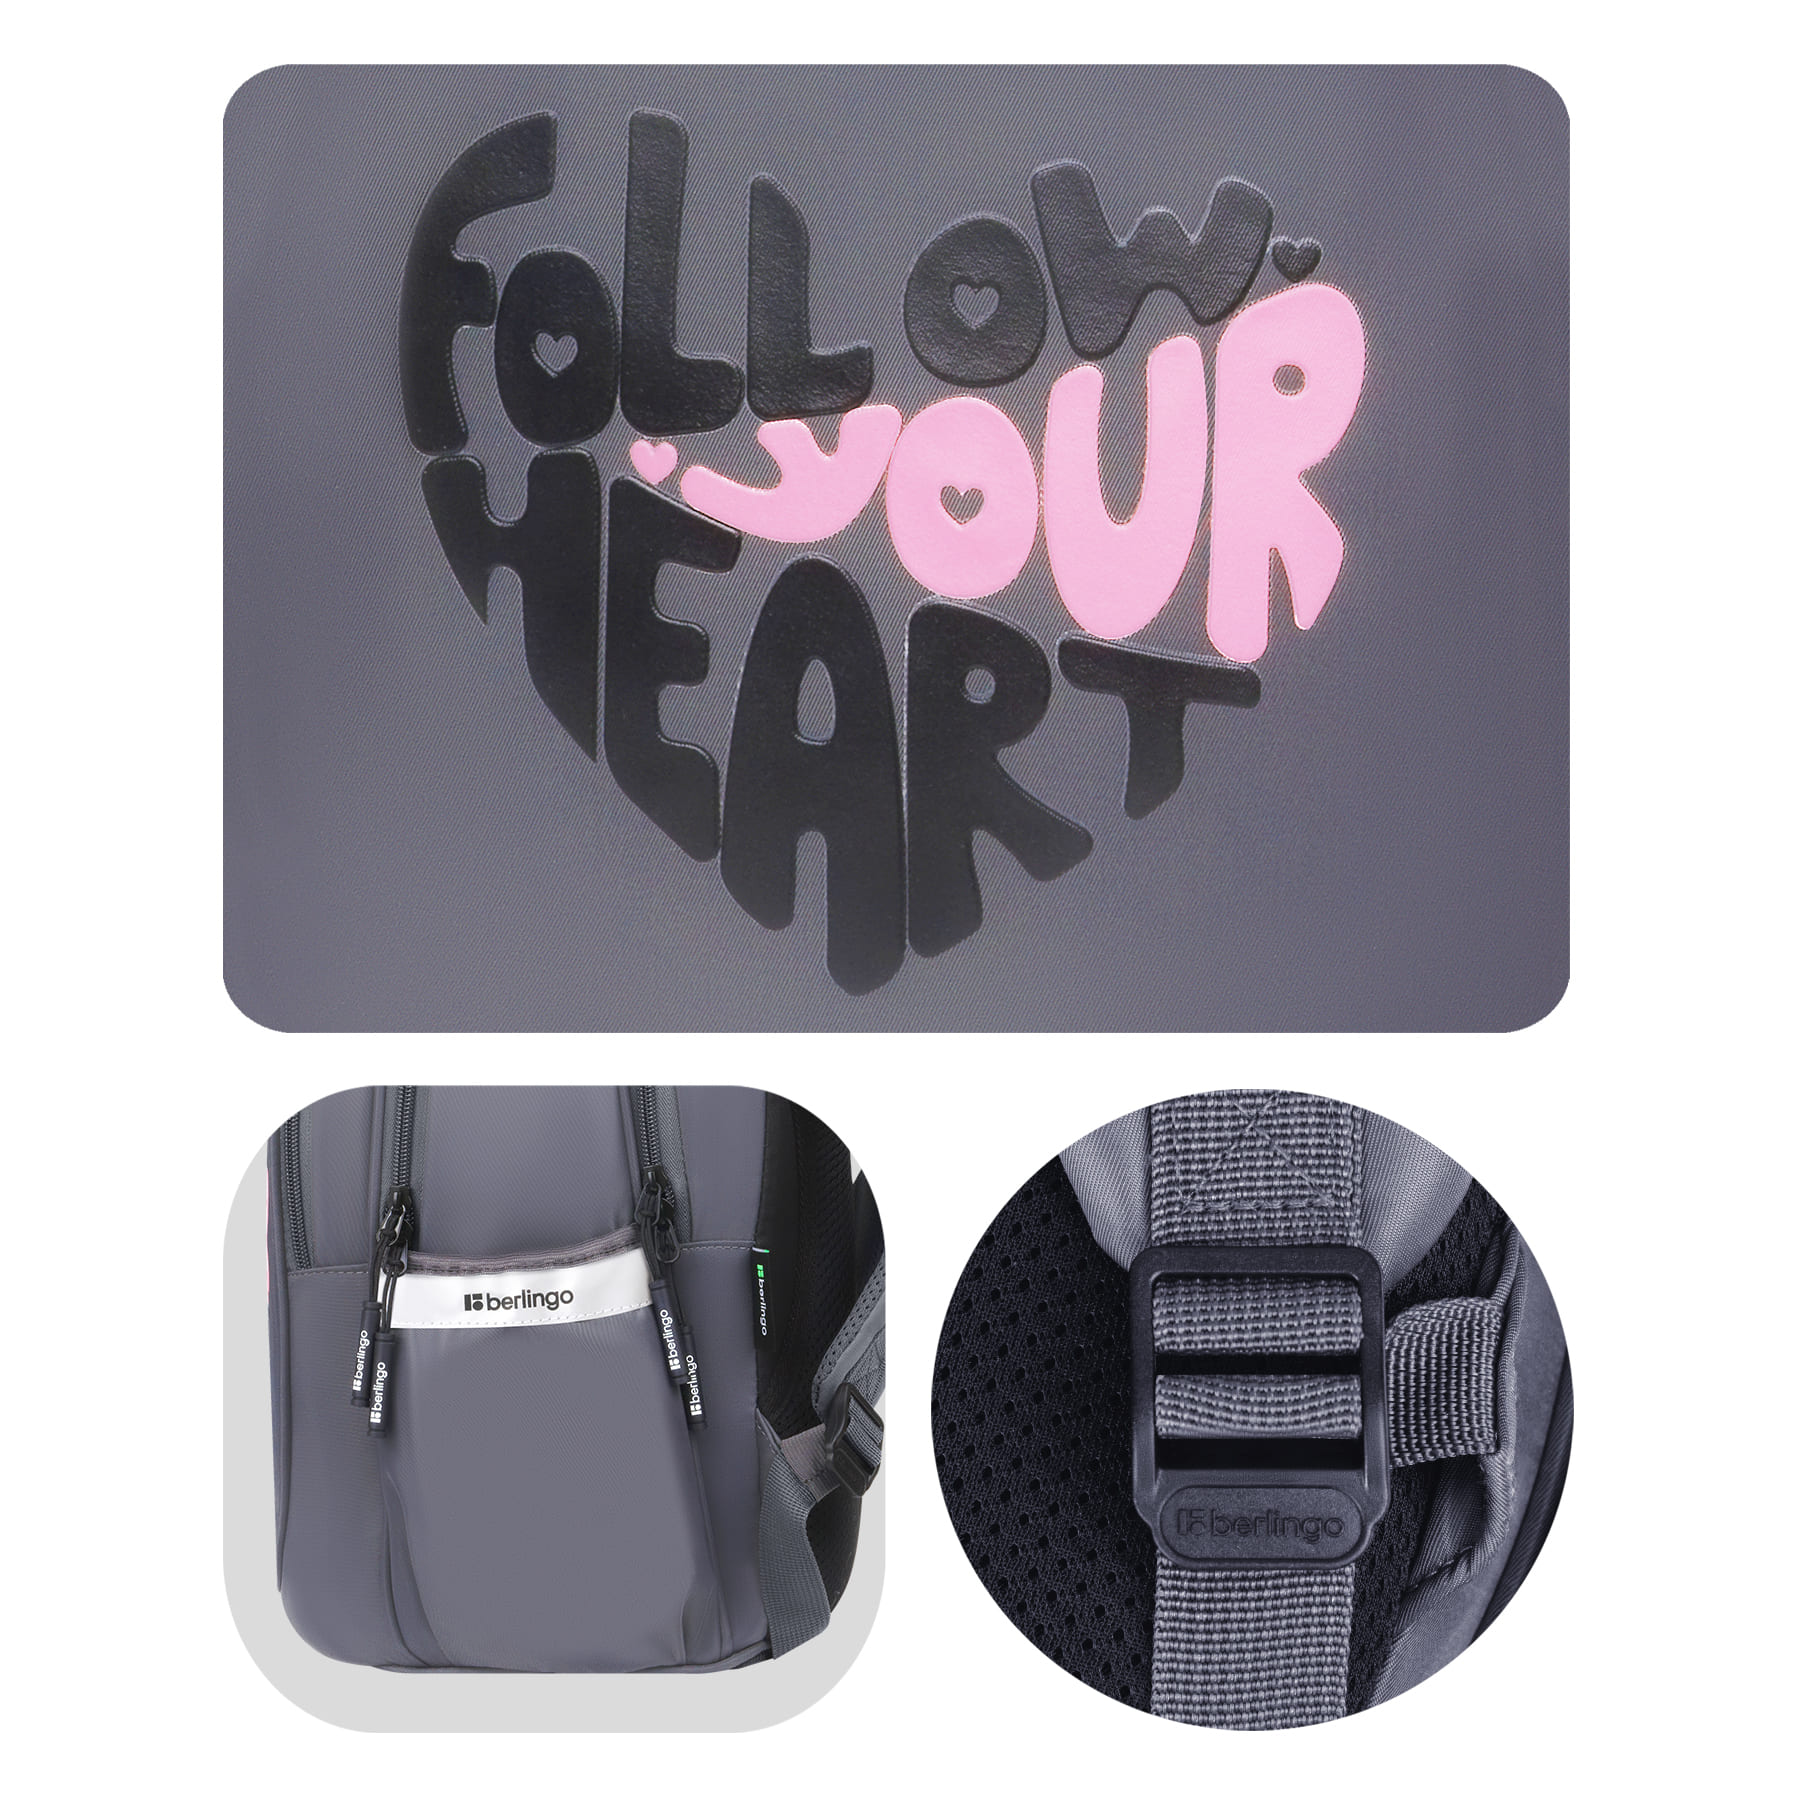 Рюкзак Berlingo Modern "Follow your heart" 38*30*18см, 3 отделения, 2 кармана, эргономичная спинка